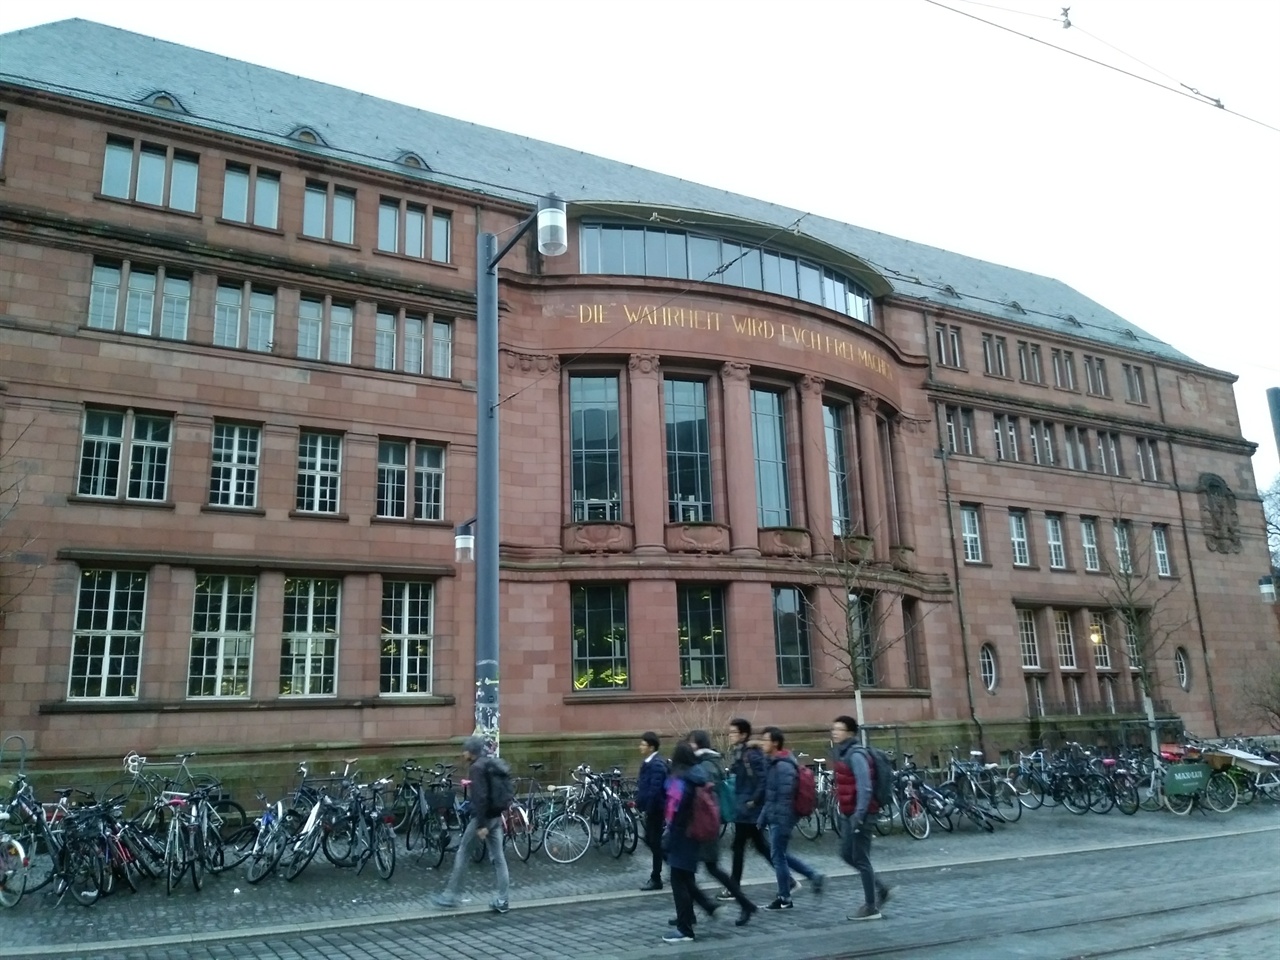 프라이부르그 대학의 모습 정면에 '진리가 너희를 자유케 하리라'는 대학의 모토가 적혀있다. 그 아래에도 어김없이 자전거가 늘어서 있다.